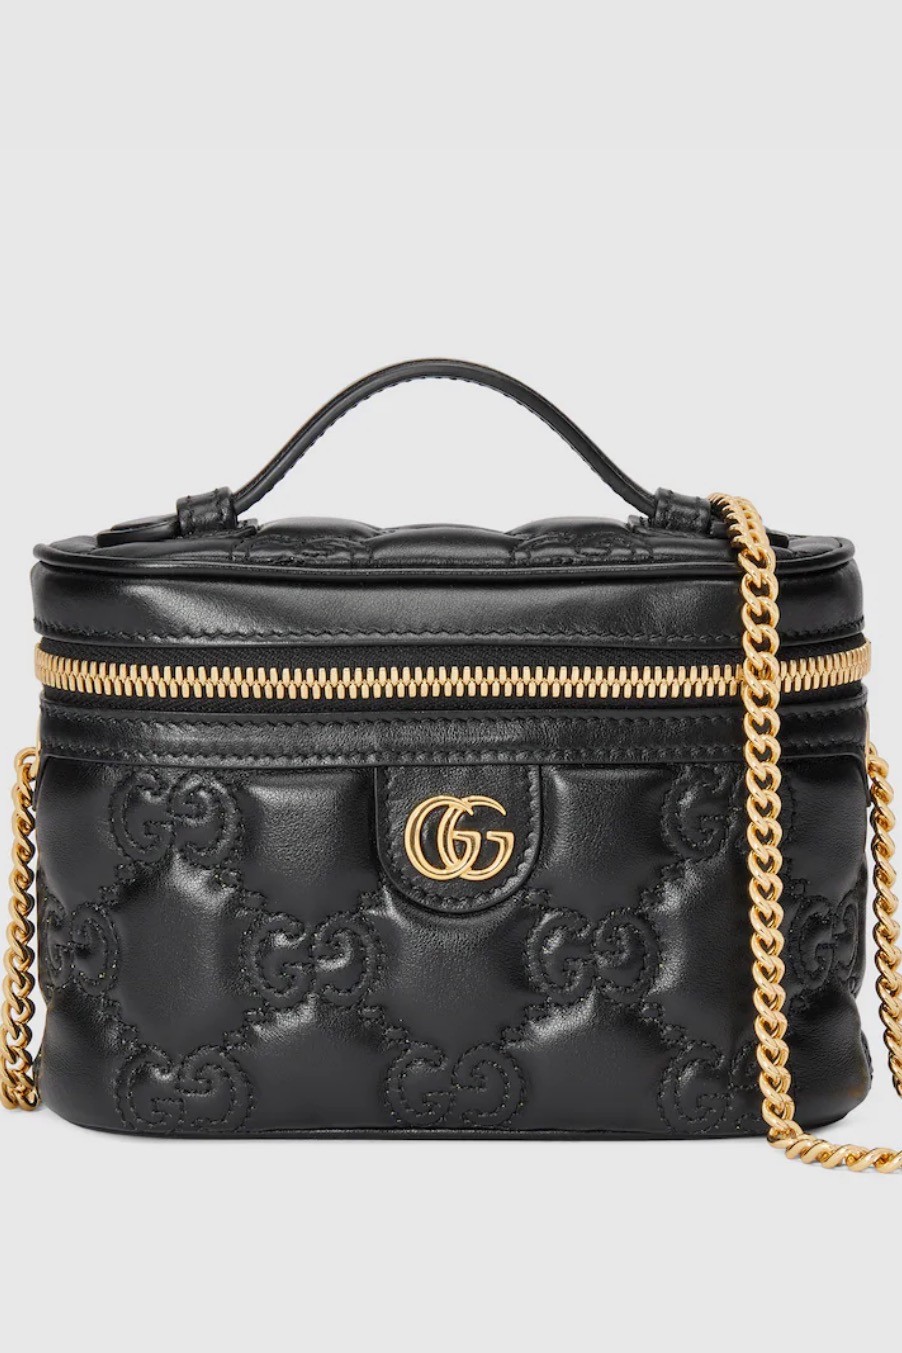 Gucci - Matelassé Top Handle Mini Bag - Black